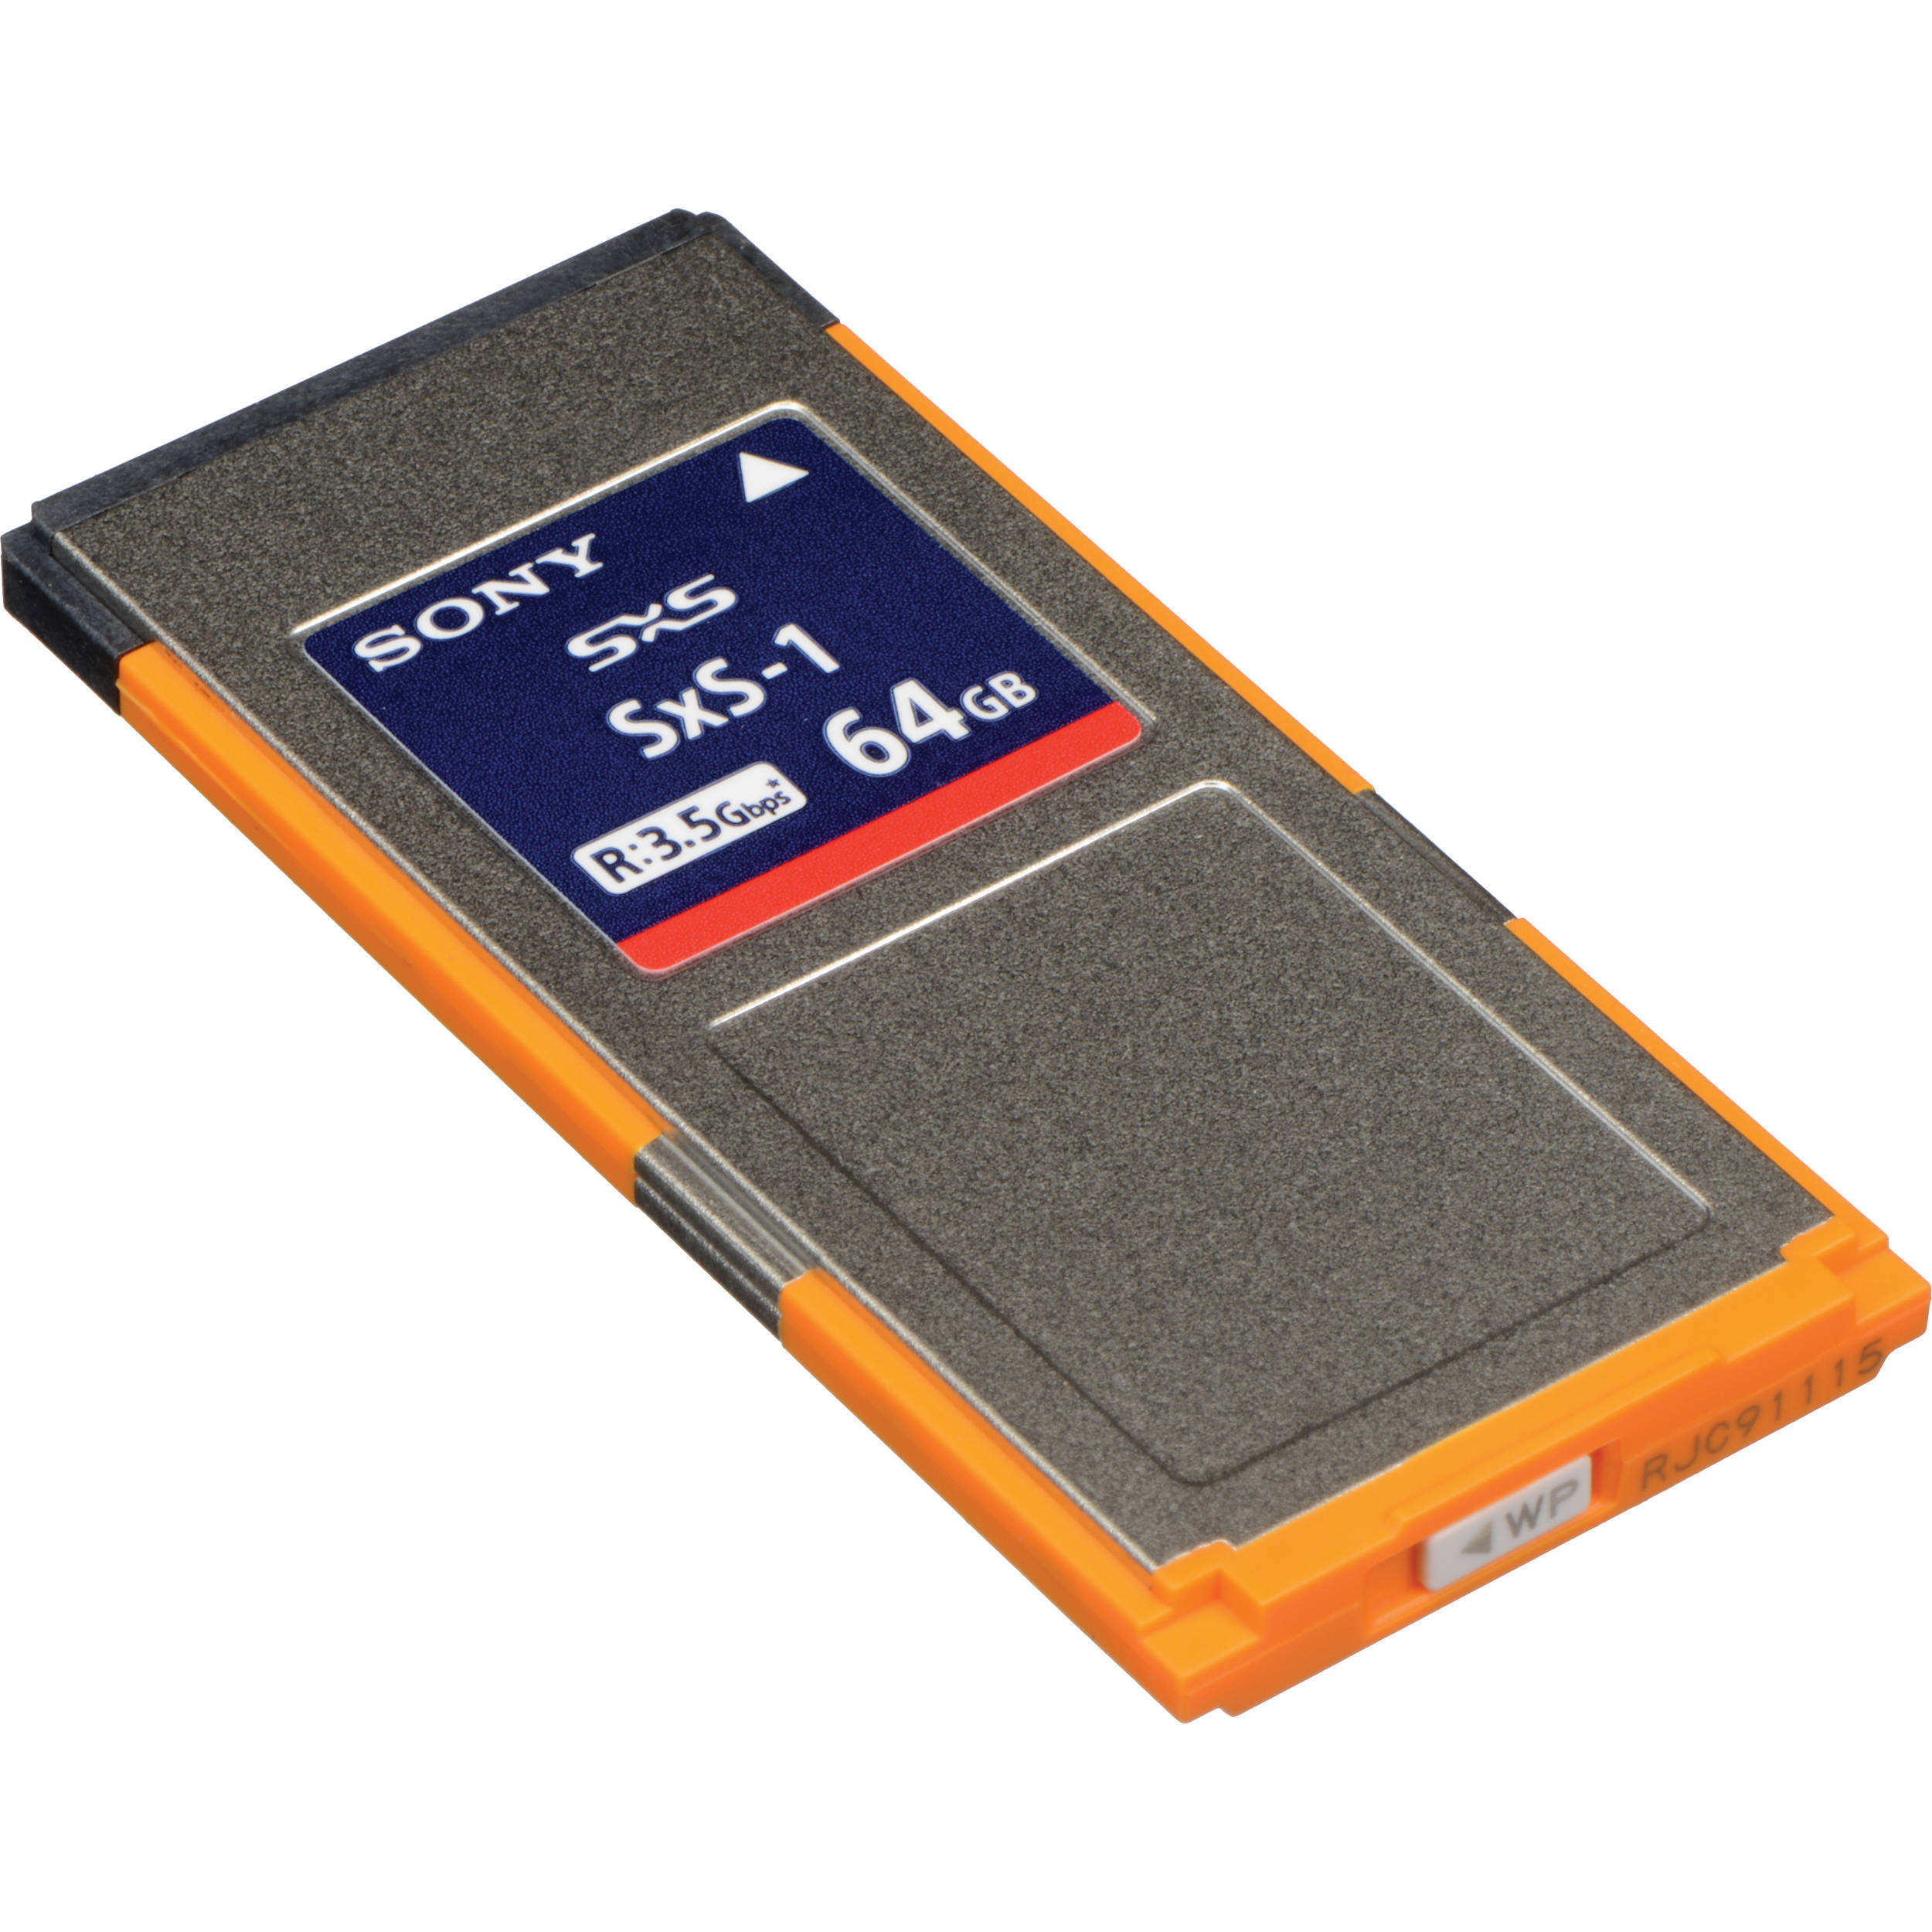 Sony Professional SxS-1 64GB G